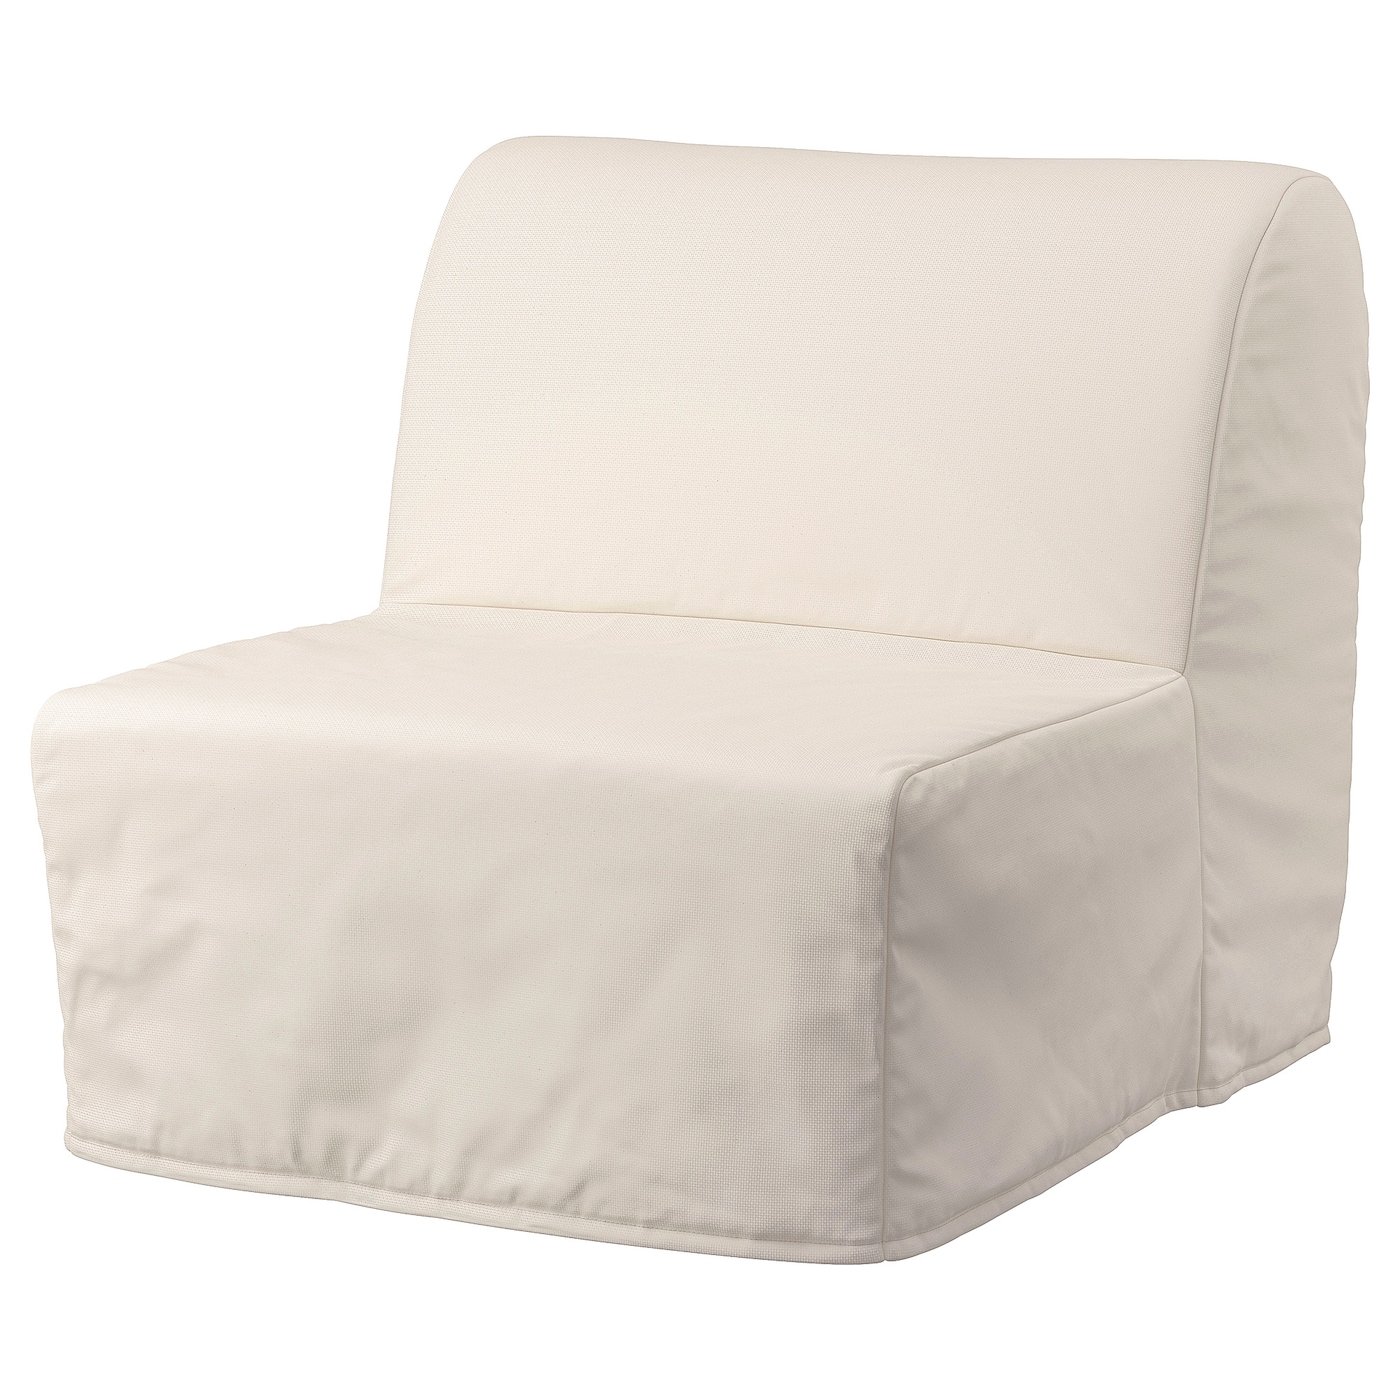 Чехол на кресло - LYCKSELE IKEA/ ЛИКСЕЛЕ ИКЕА,  светло-бежевый